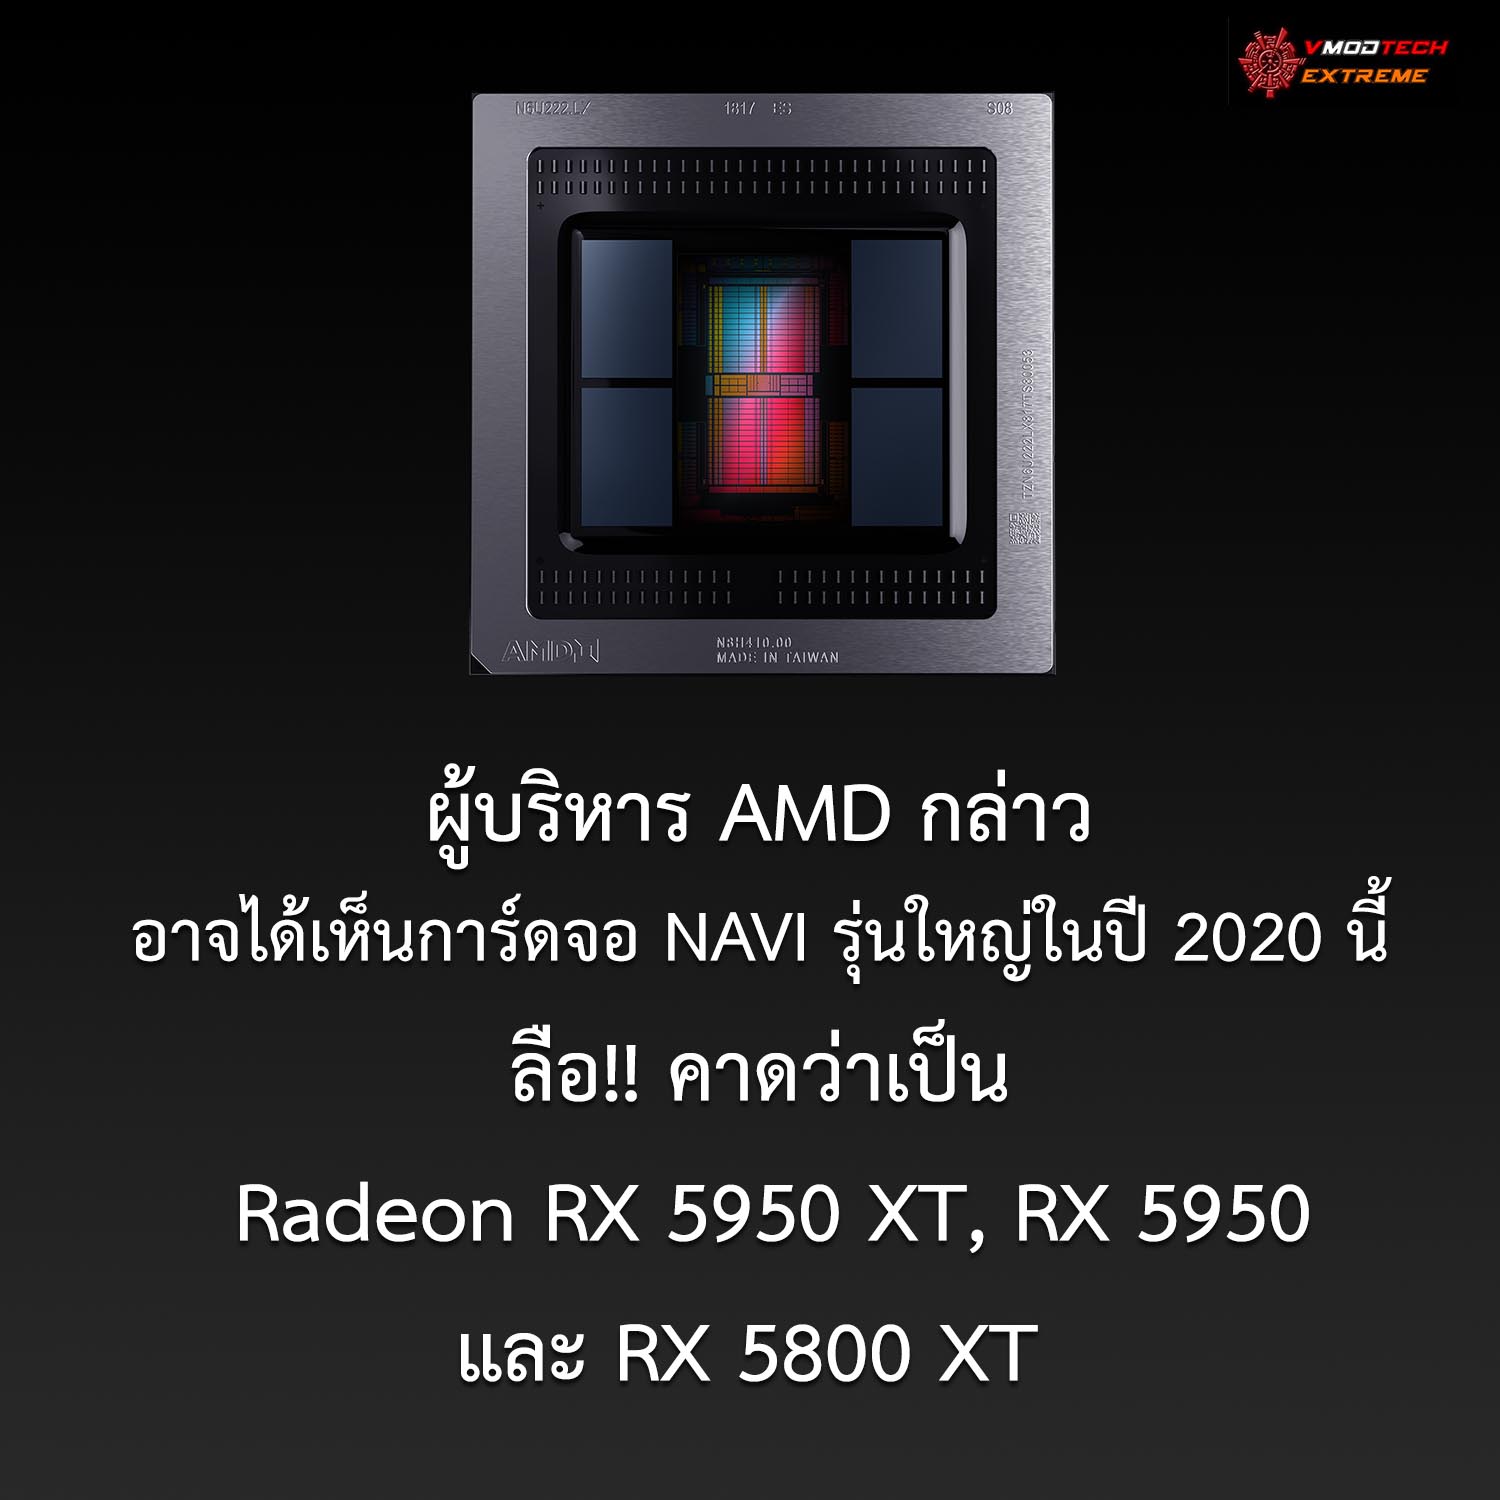 amd navi hedt1 ผู้บริหาร AMD กล่าวอาจได้เห็นการ์ดจอ NAVI รุ่นใหญ่ในปี 2020 นี้ 